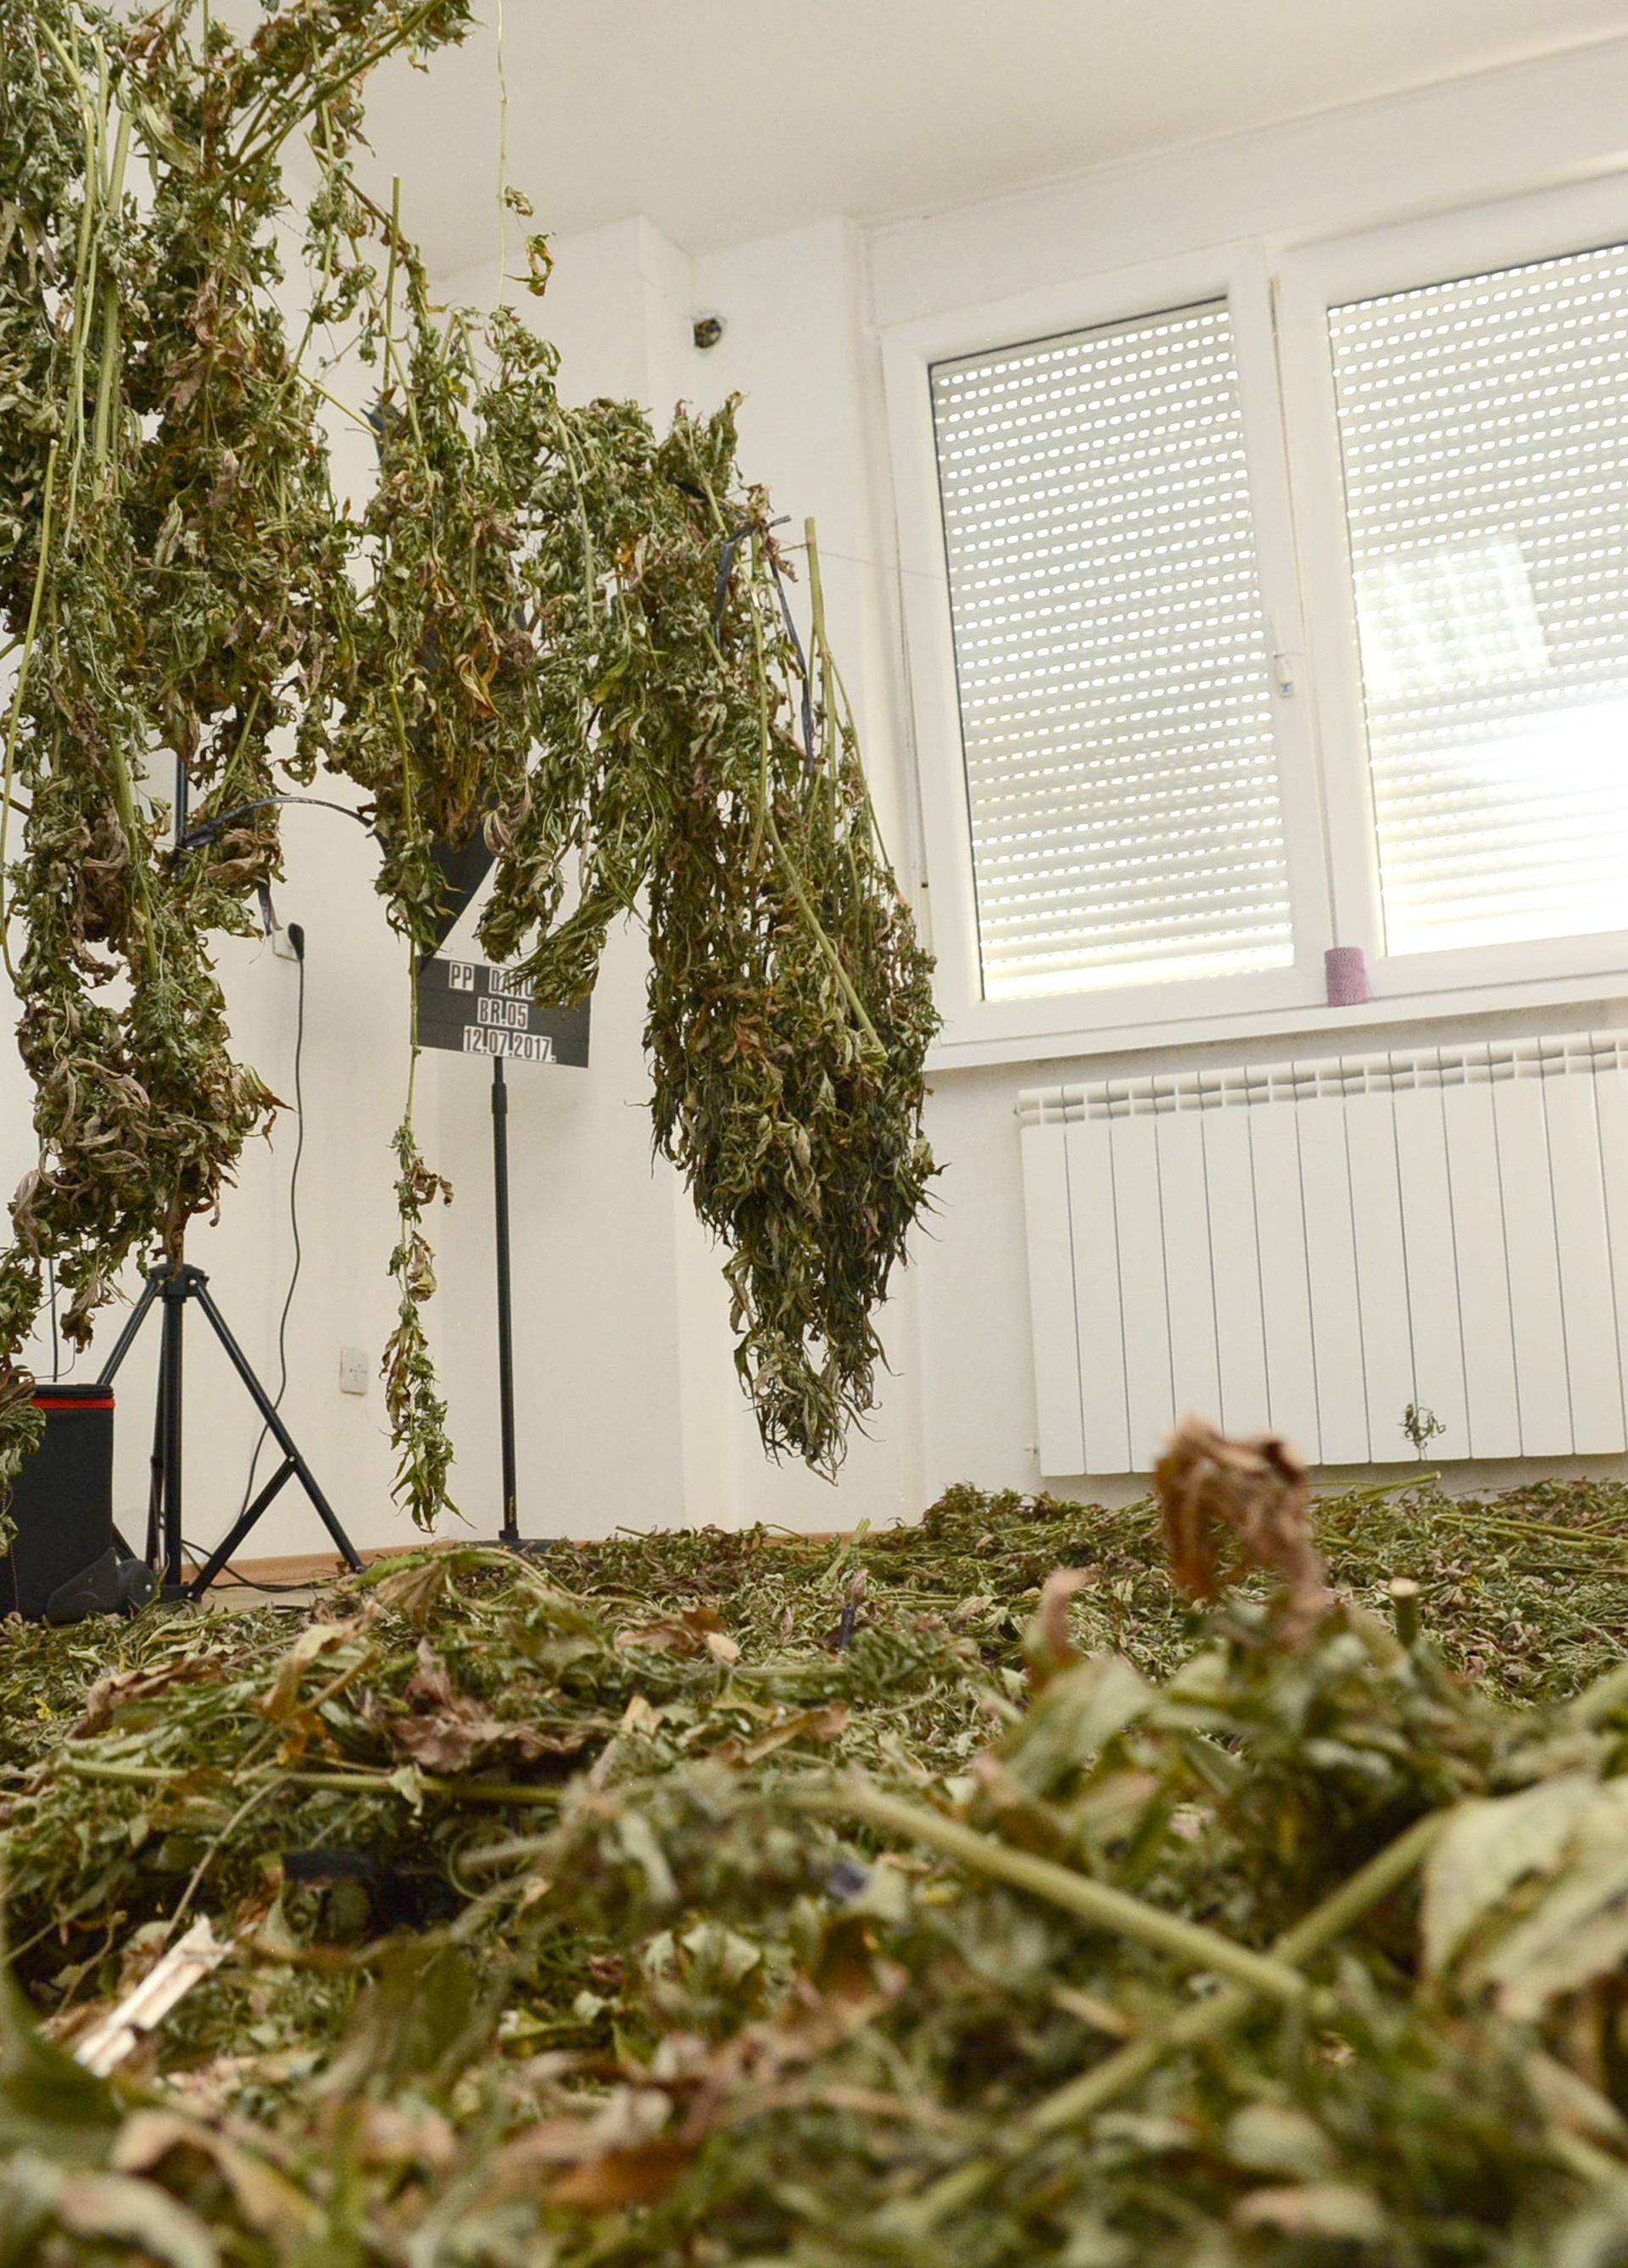 Daruvar: Policija zapljenila 30ak kilograma marihuane